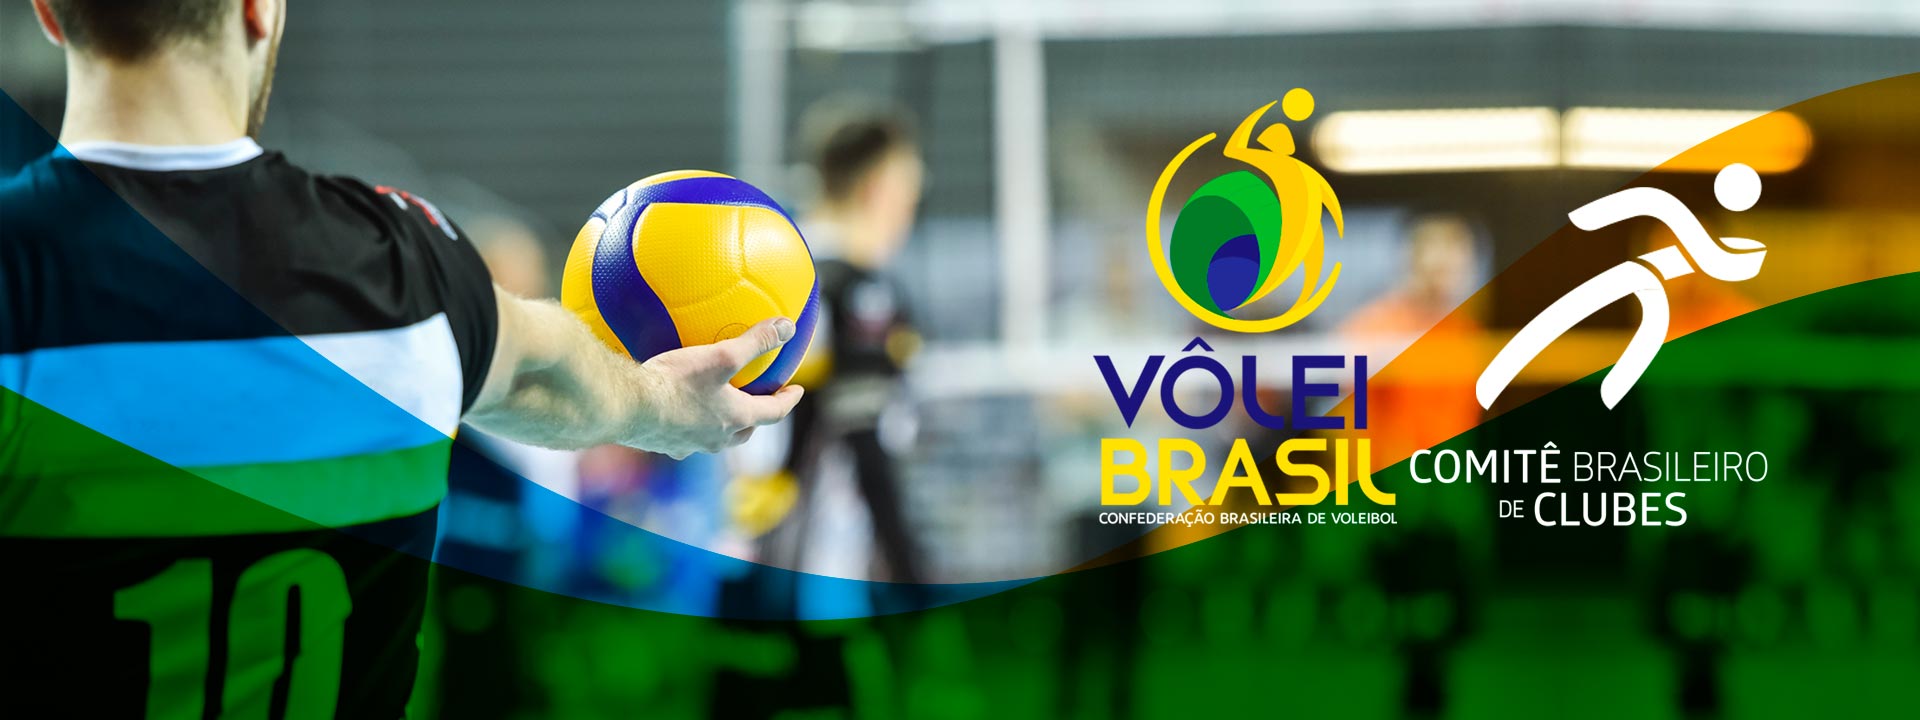 Vôlei Master - CBV - Confederação Brasileira de Voleibol, tiebreak